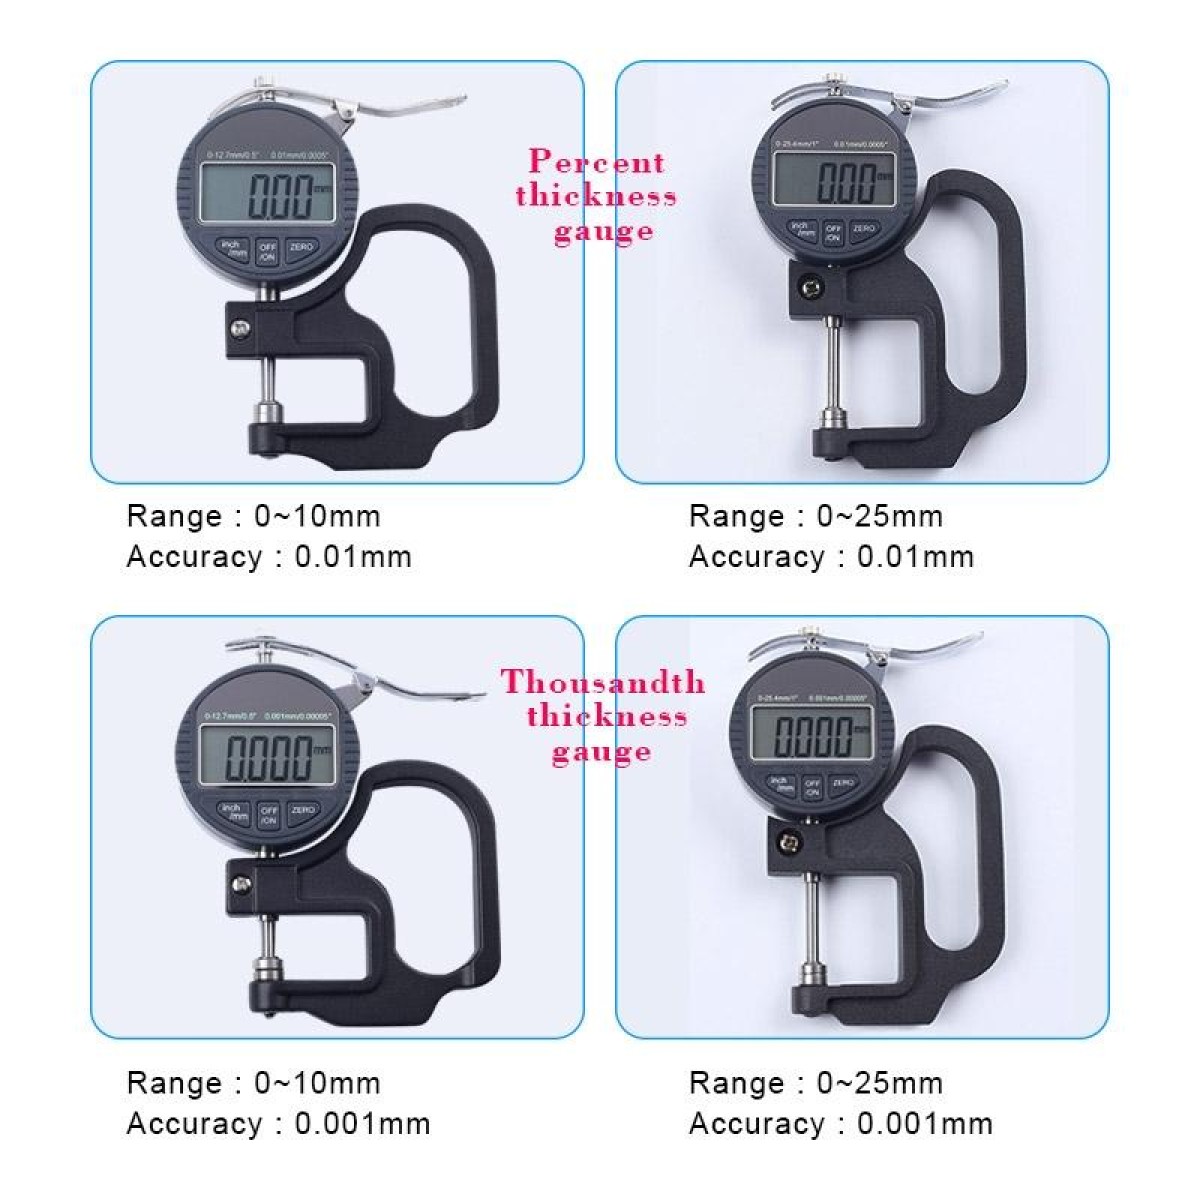 0-25mm Range 30mm Probe Digital Display Micrometer Thickness Gauge